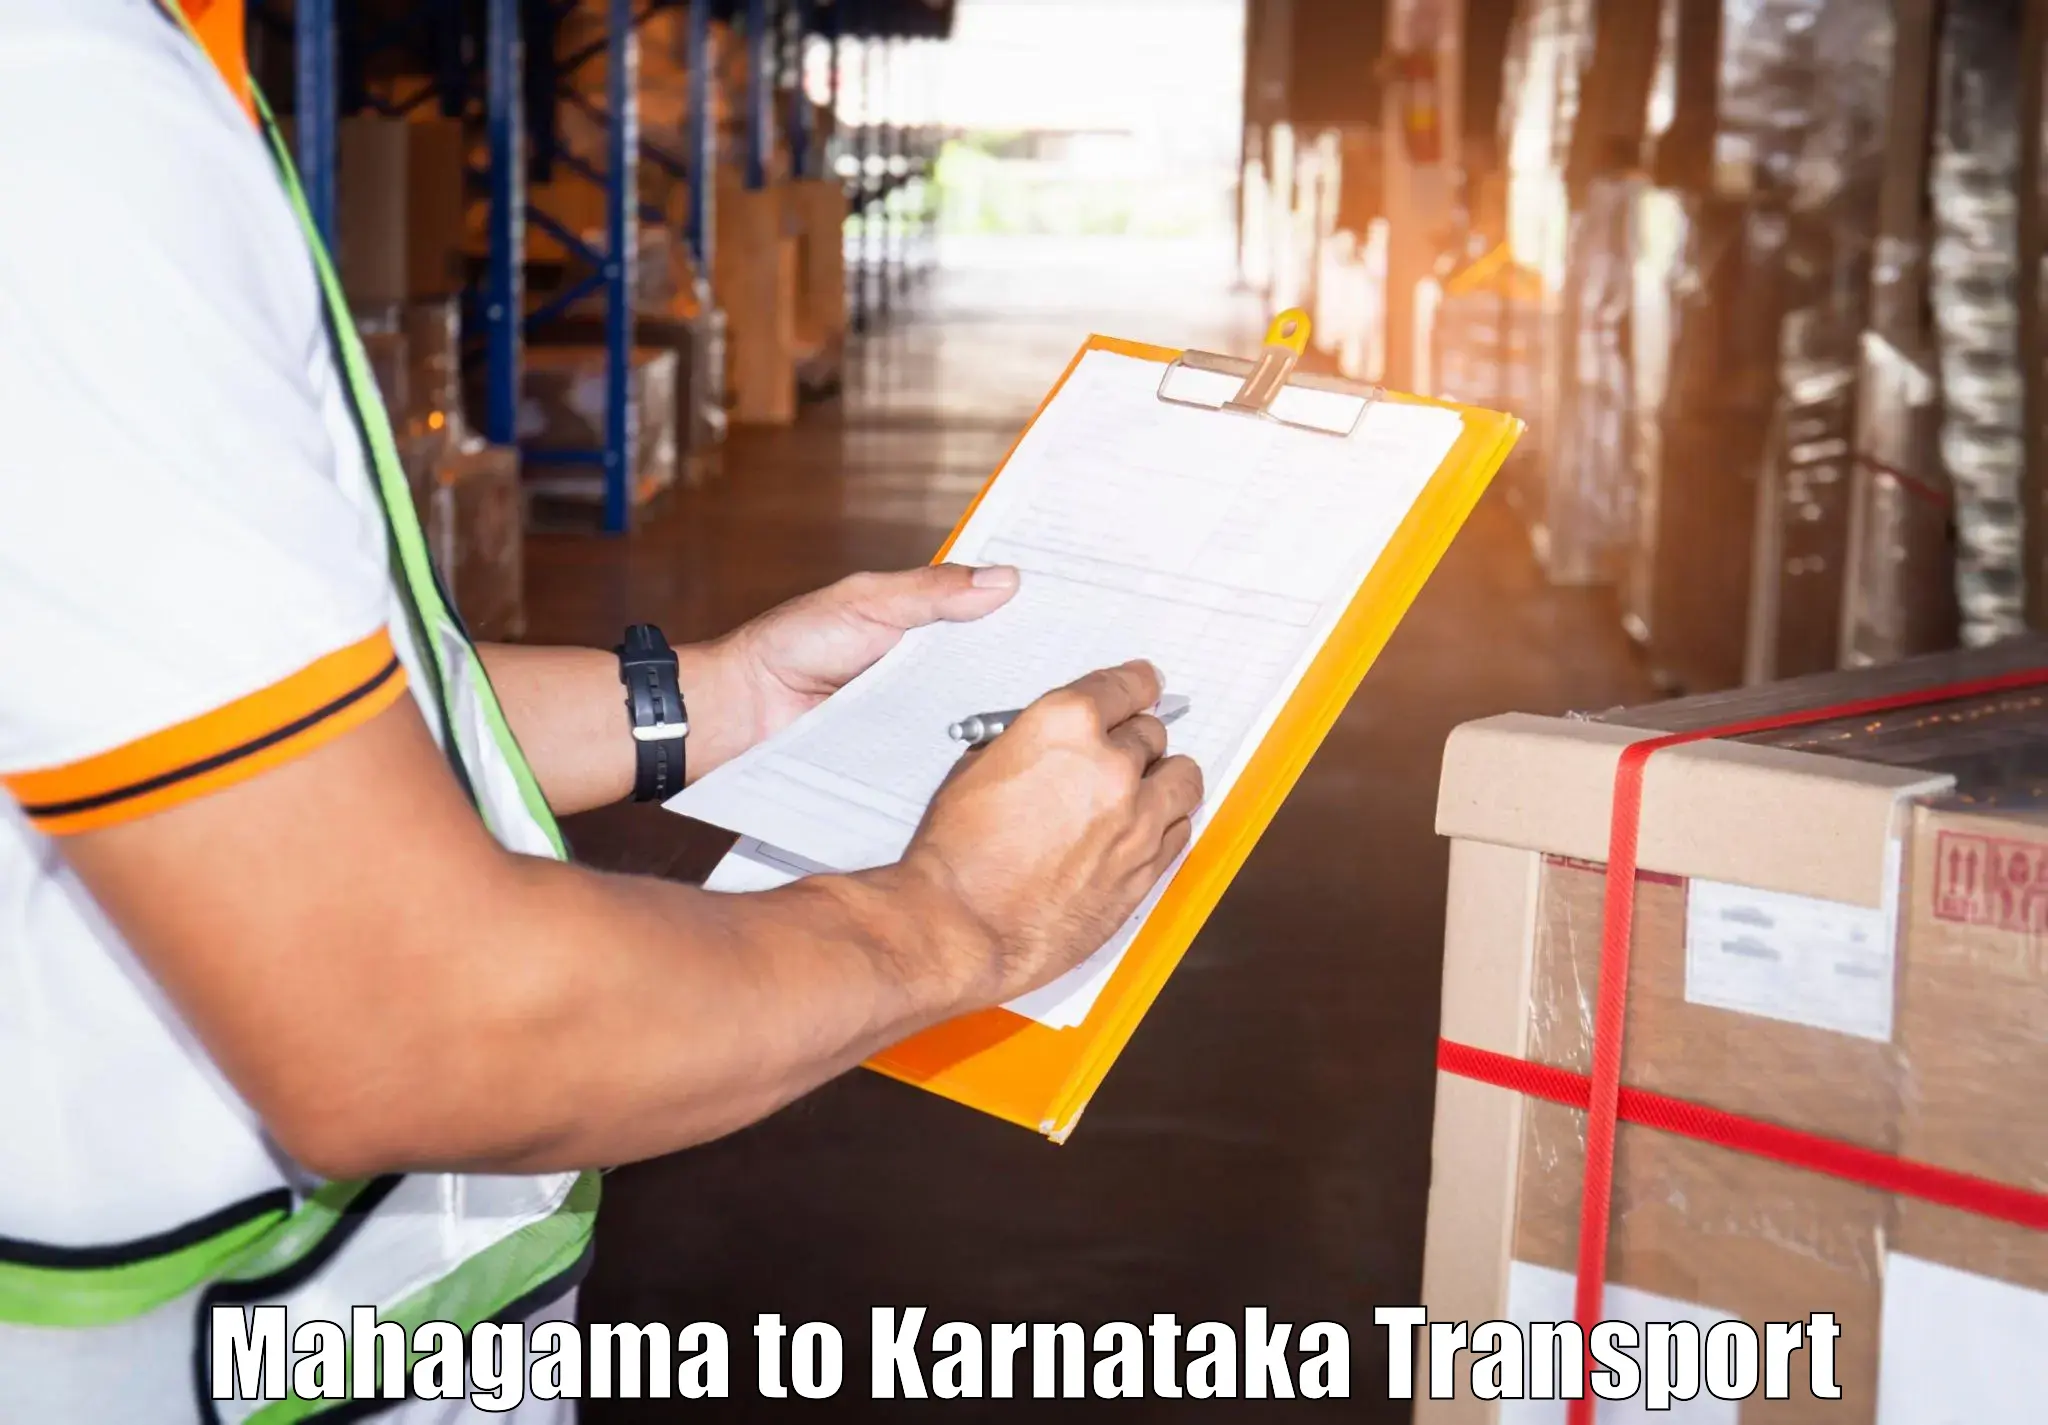 Cargo train transport services Mahagama to Kolhar